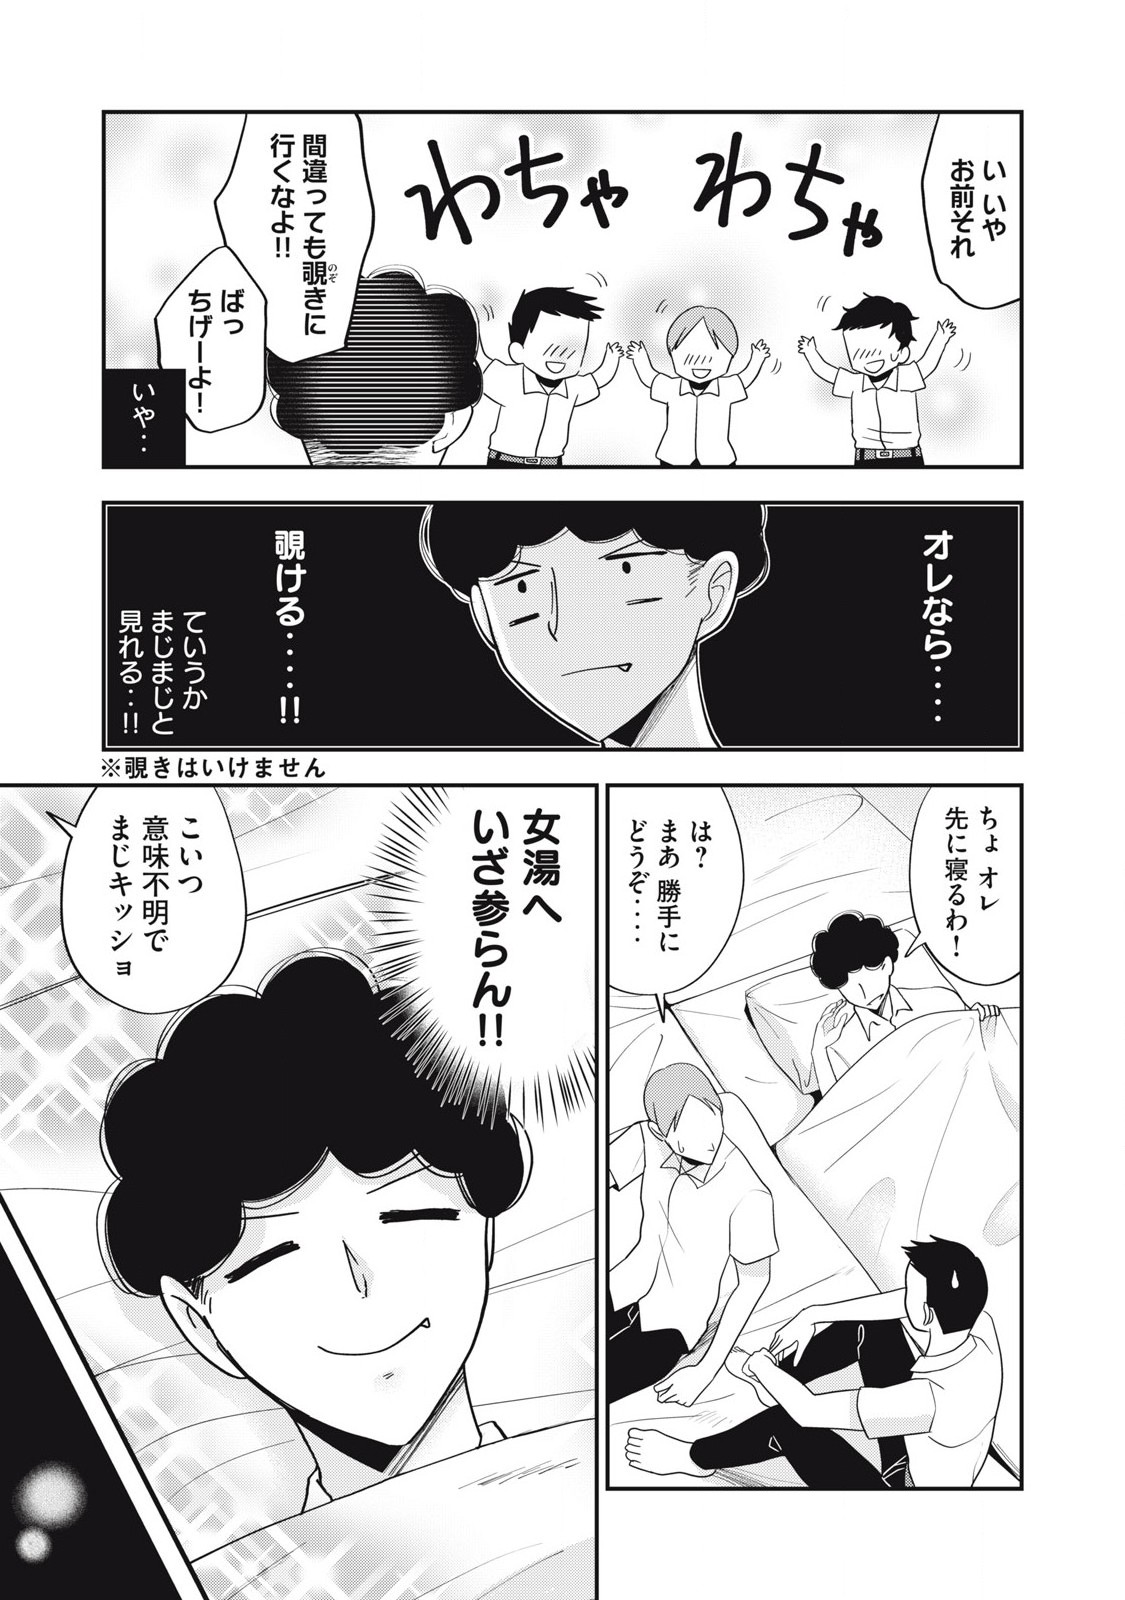 Yumeutsutsu no Hana no Sono - Chapter 27 - Page 9